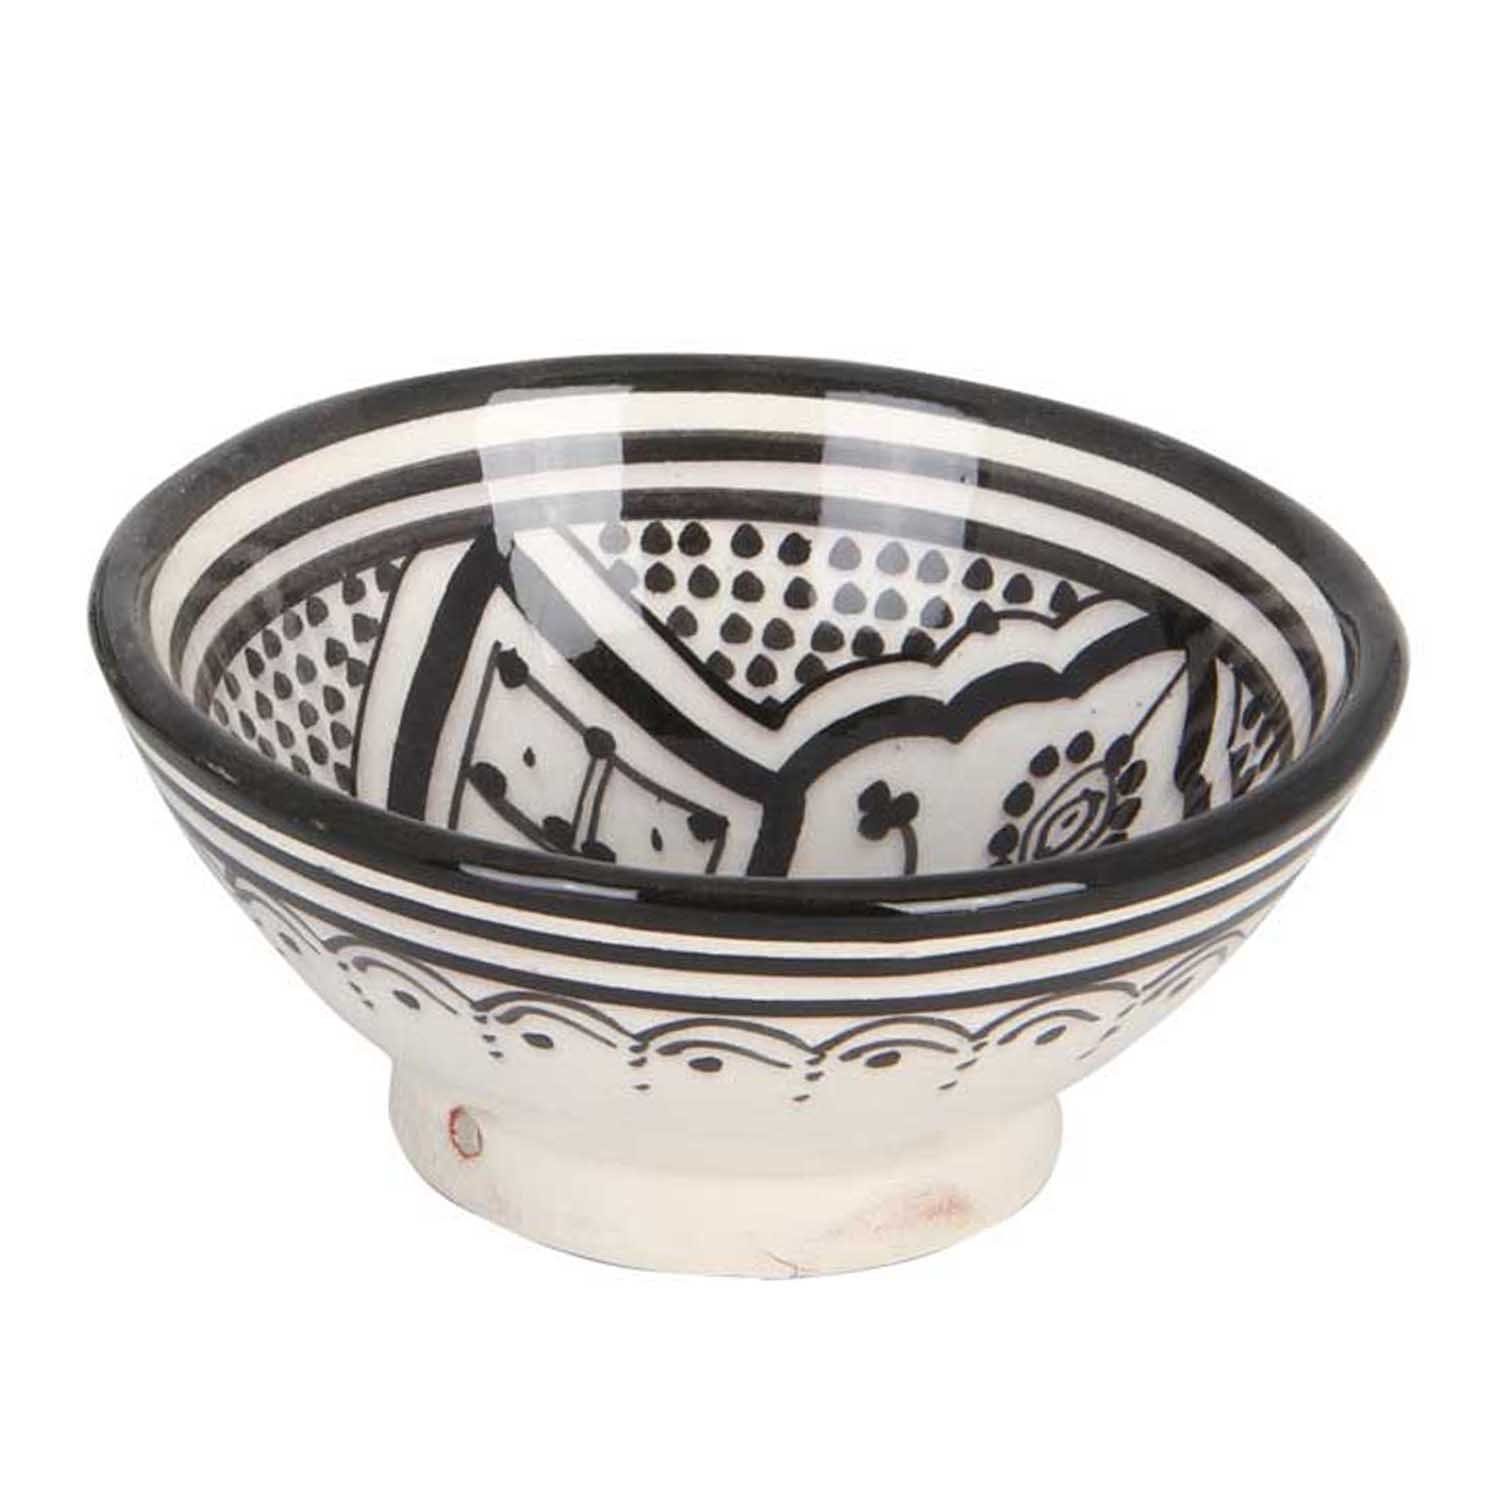 Casa Moro Dekoschüssel Handbemalte Keramikschüssel KS38 mit Ø 15 cm aus Marokko (Weihnachtsdeko), Handmade, Orientalischer Deko-Schüssel in Schwarz Weiß, KS1038